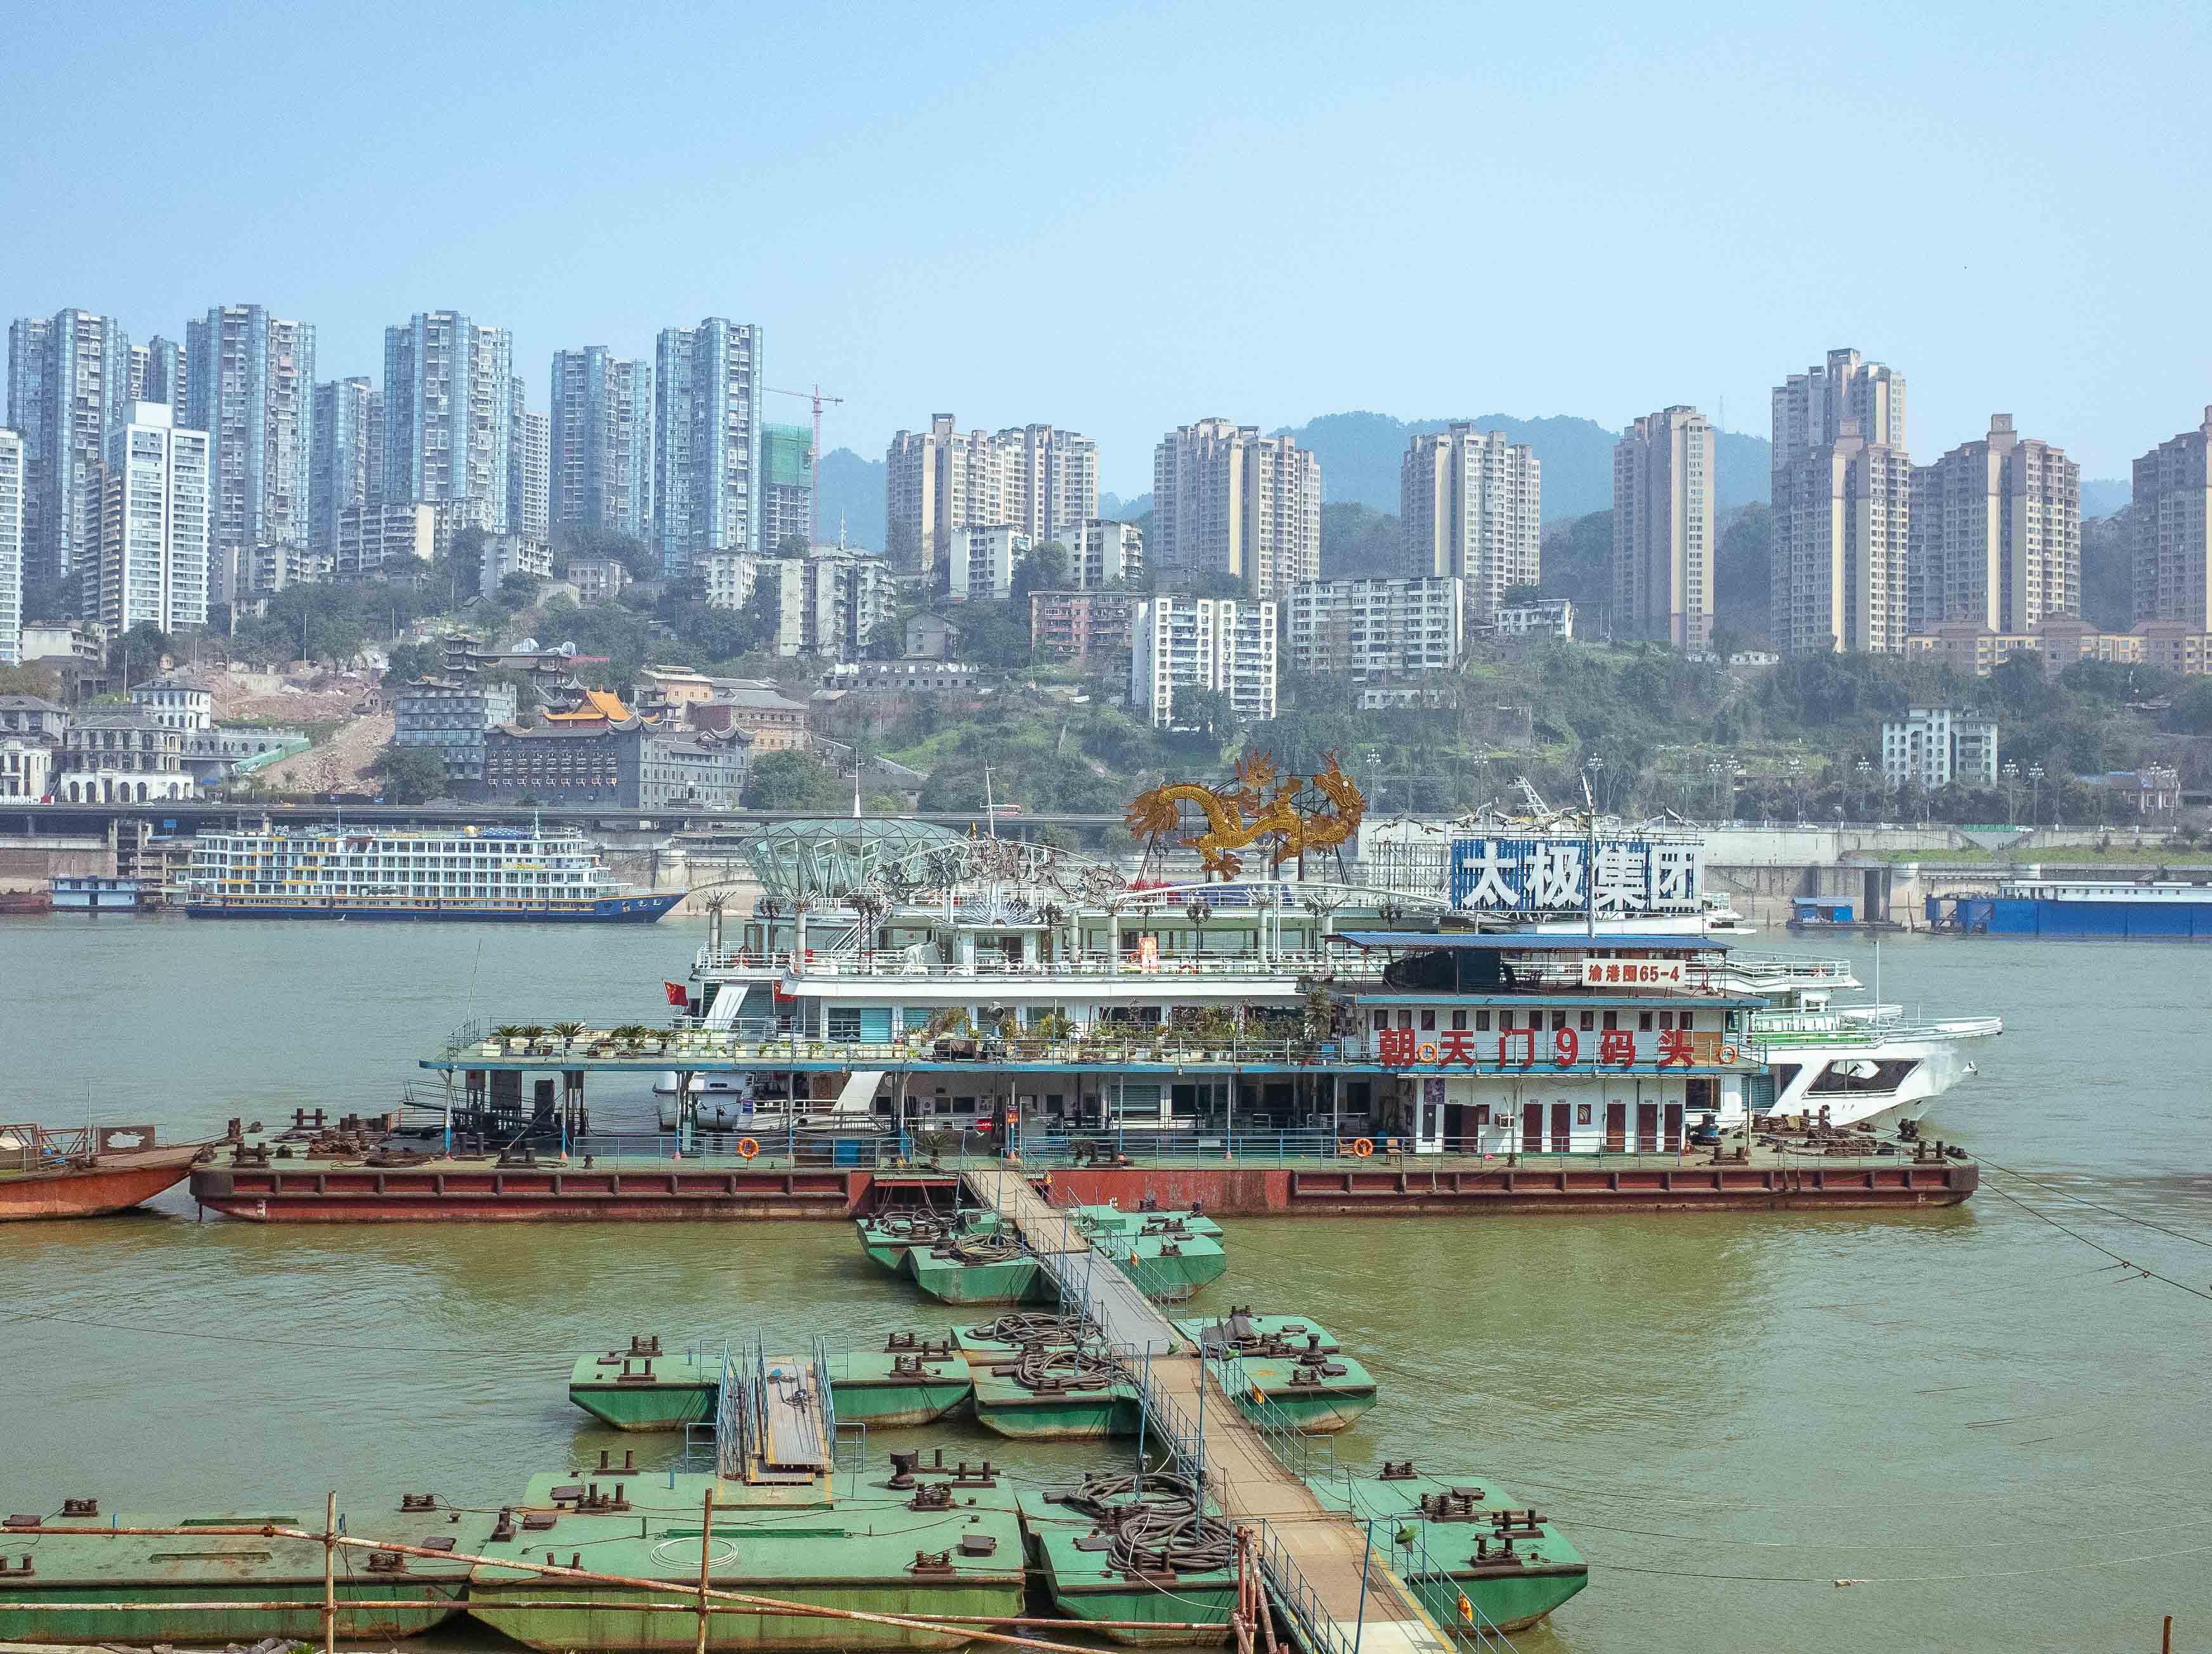 重庆北滨路鎏嘉码头图片